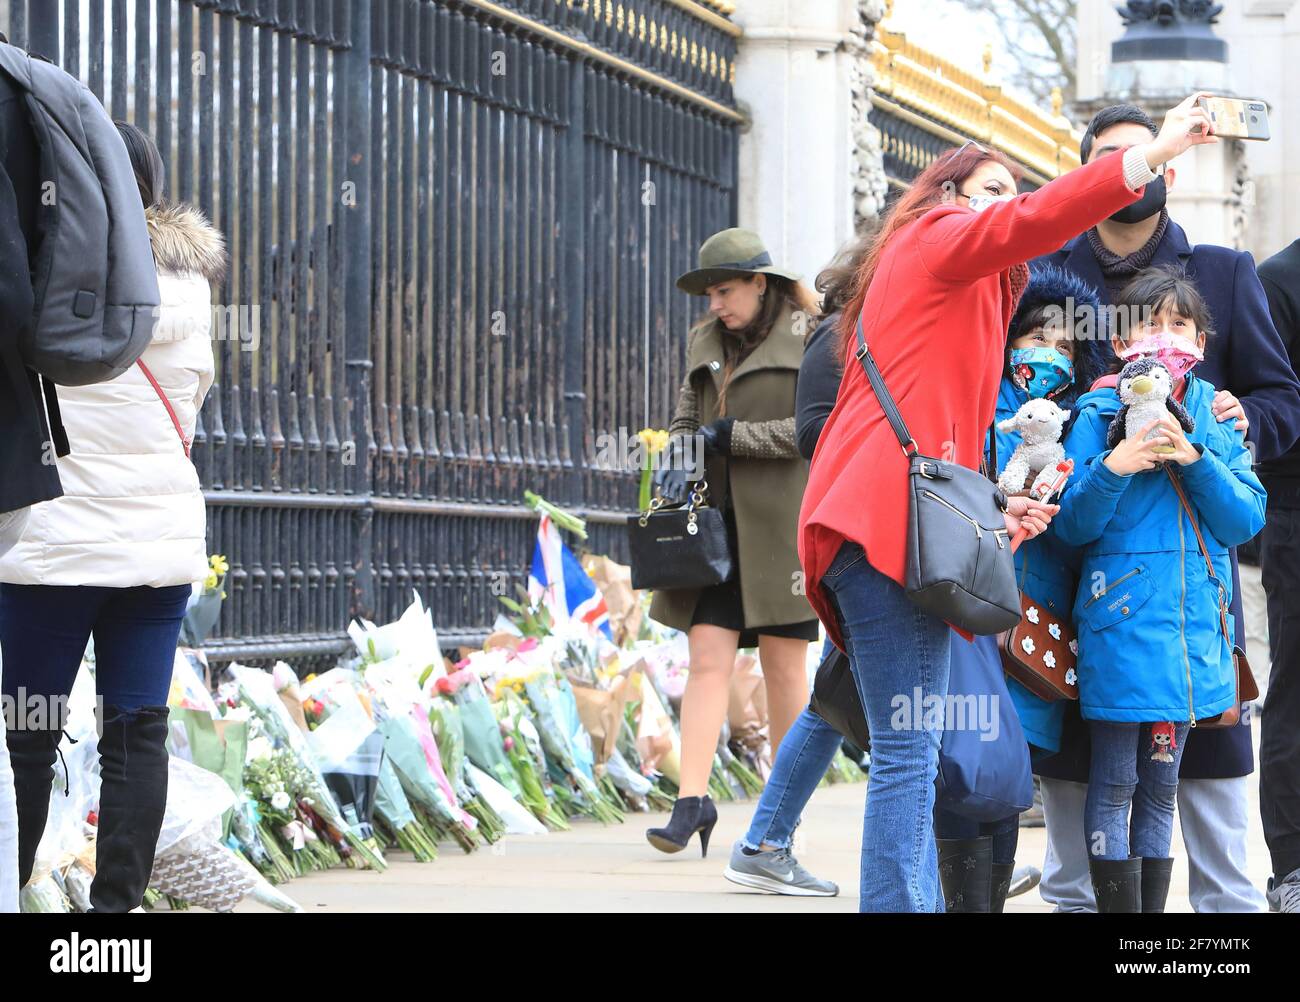 London, Großbritannien, 10. April 2021. Menschen standen Schlange, um vor dem Buckingham Palace Blumen zu legen und ihren Respekt zu zollen, als Hommage an seine Königliche Hoheit Prinz Philip, der am Freitag im Alter von 99 Jahren, nur 2 Monate vor seinem 100. Geburtstag, starb. Monica Wells/Alamy Live News Stockfoto